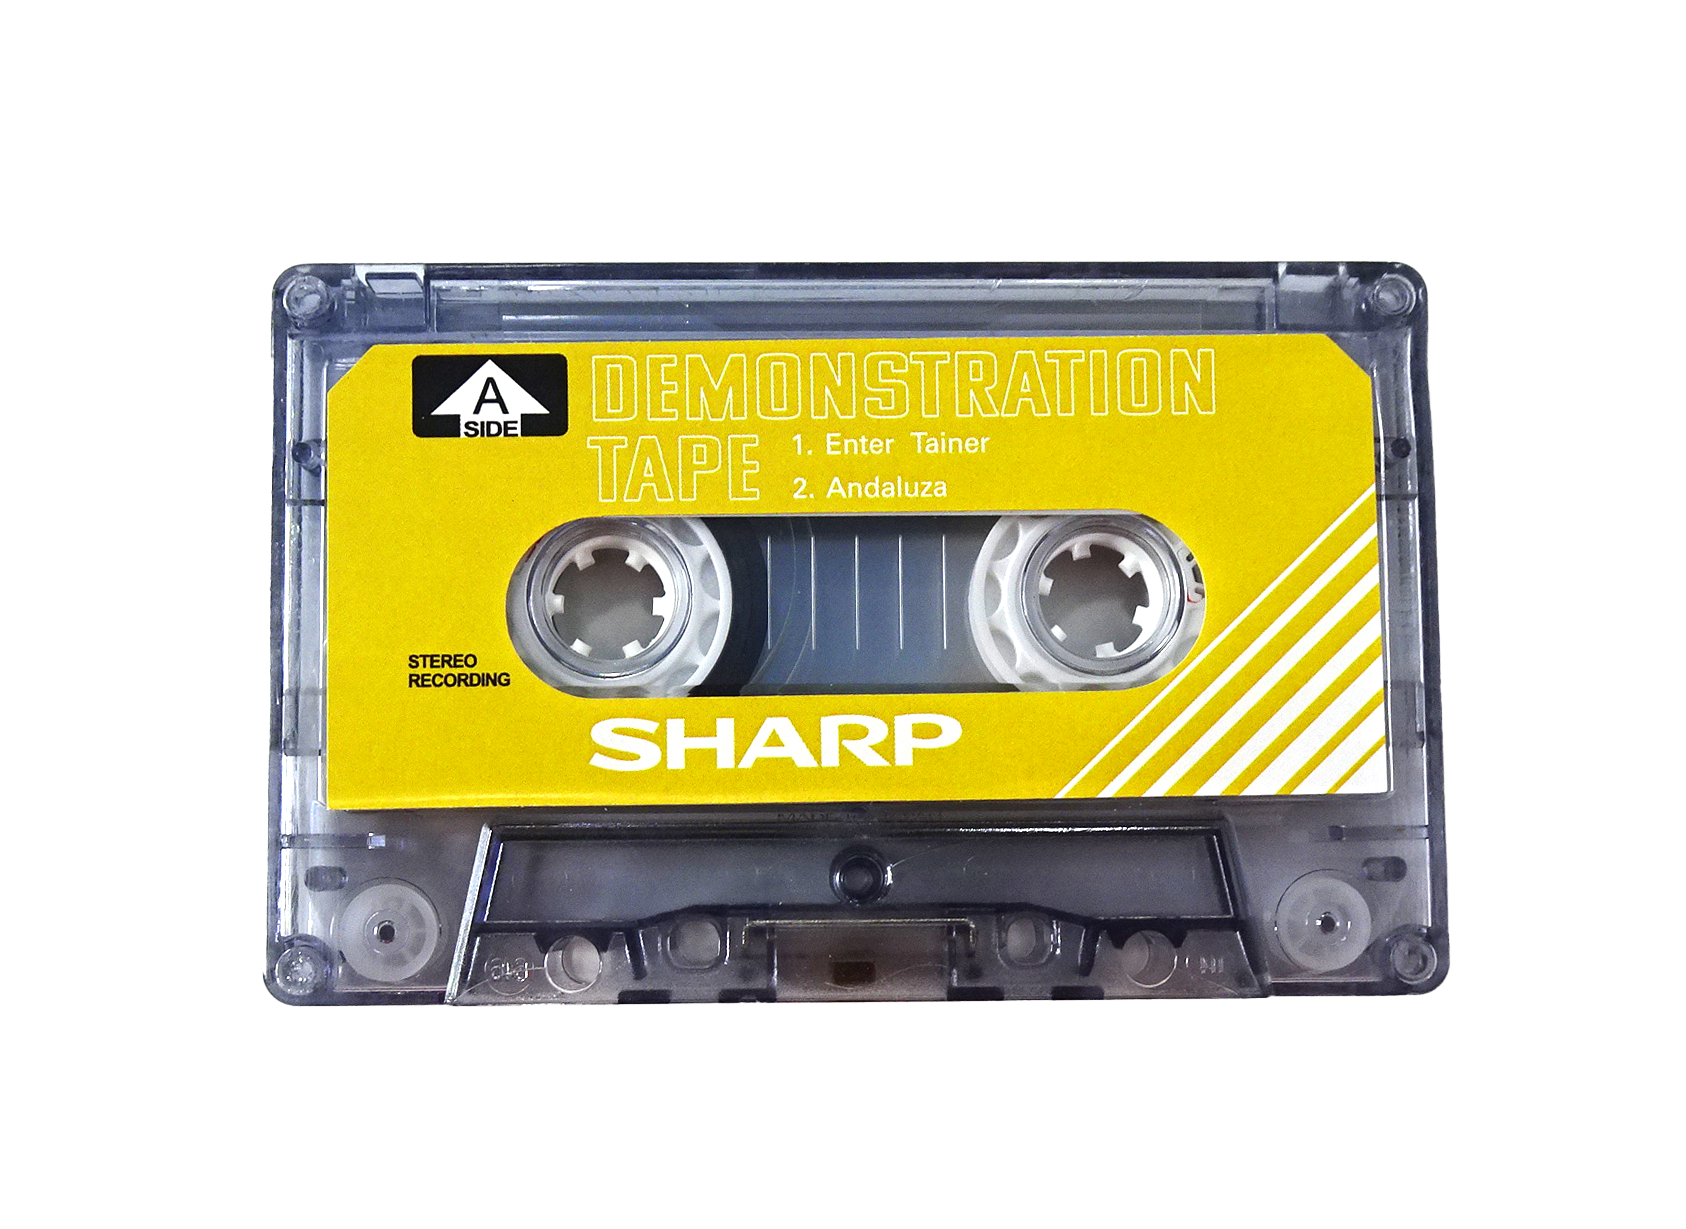 Аудиокассета SHARP демонстрационная жёлтая 20 минутная для магнитофонов SHARP. Бланк.